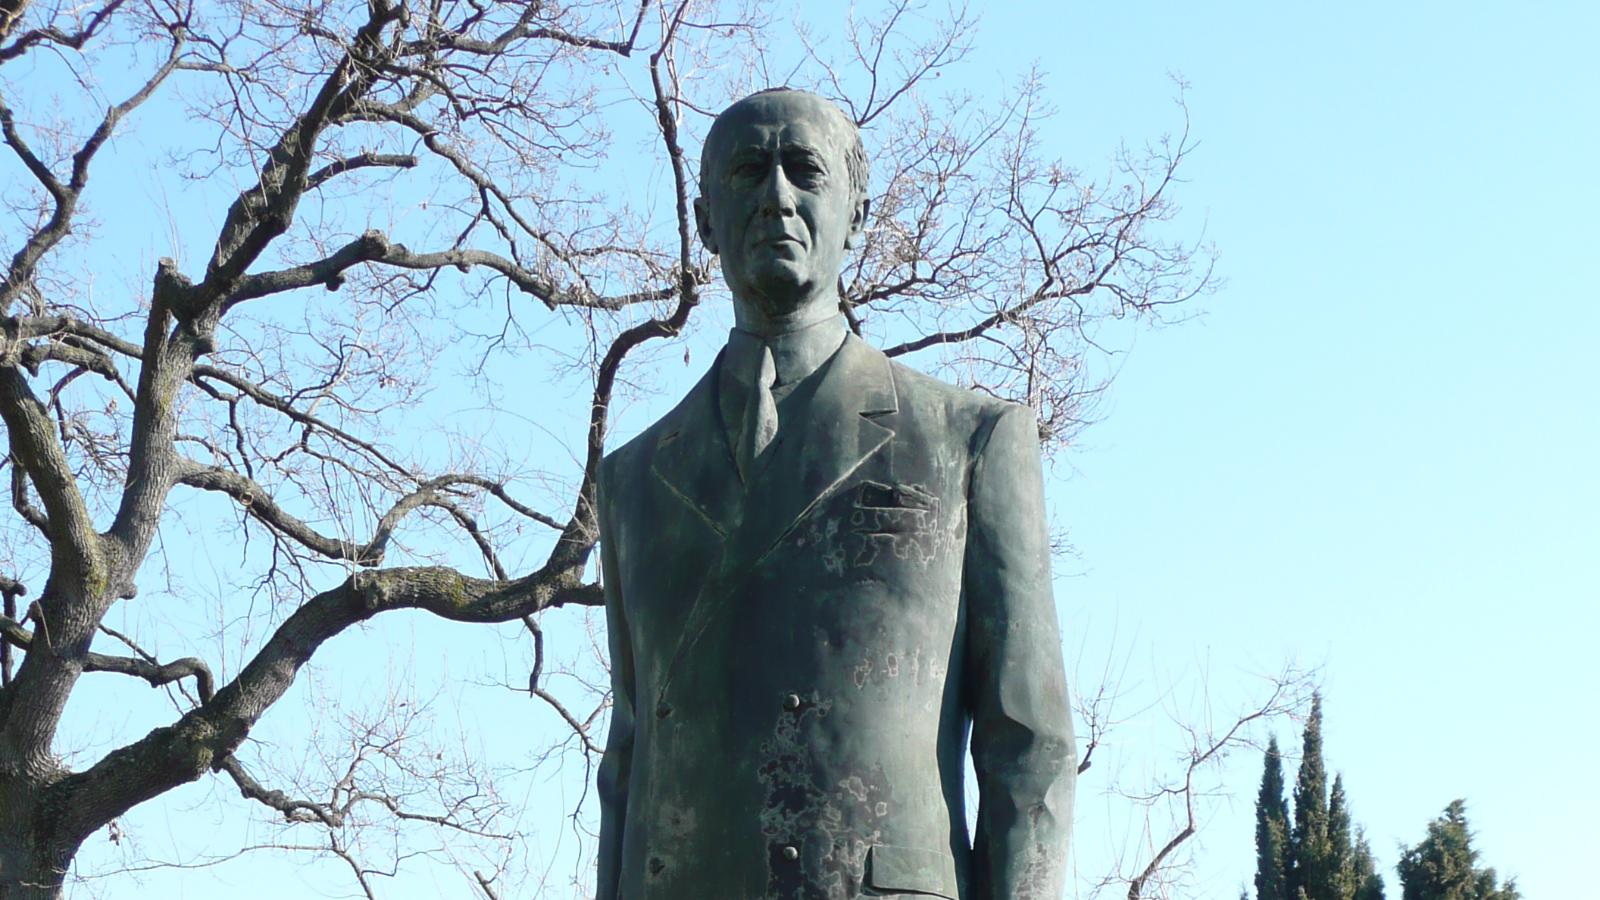 Pontecchio Marconi - Statua di Guglielmo Marconi